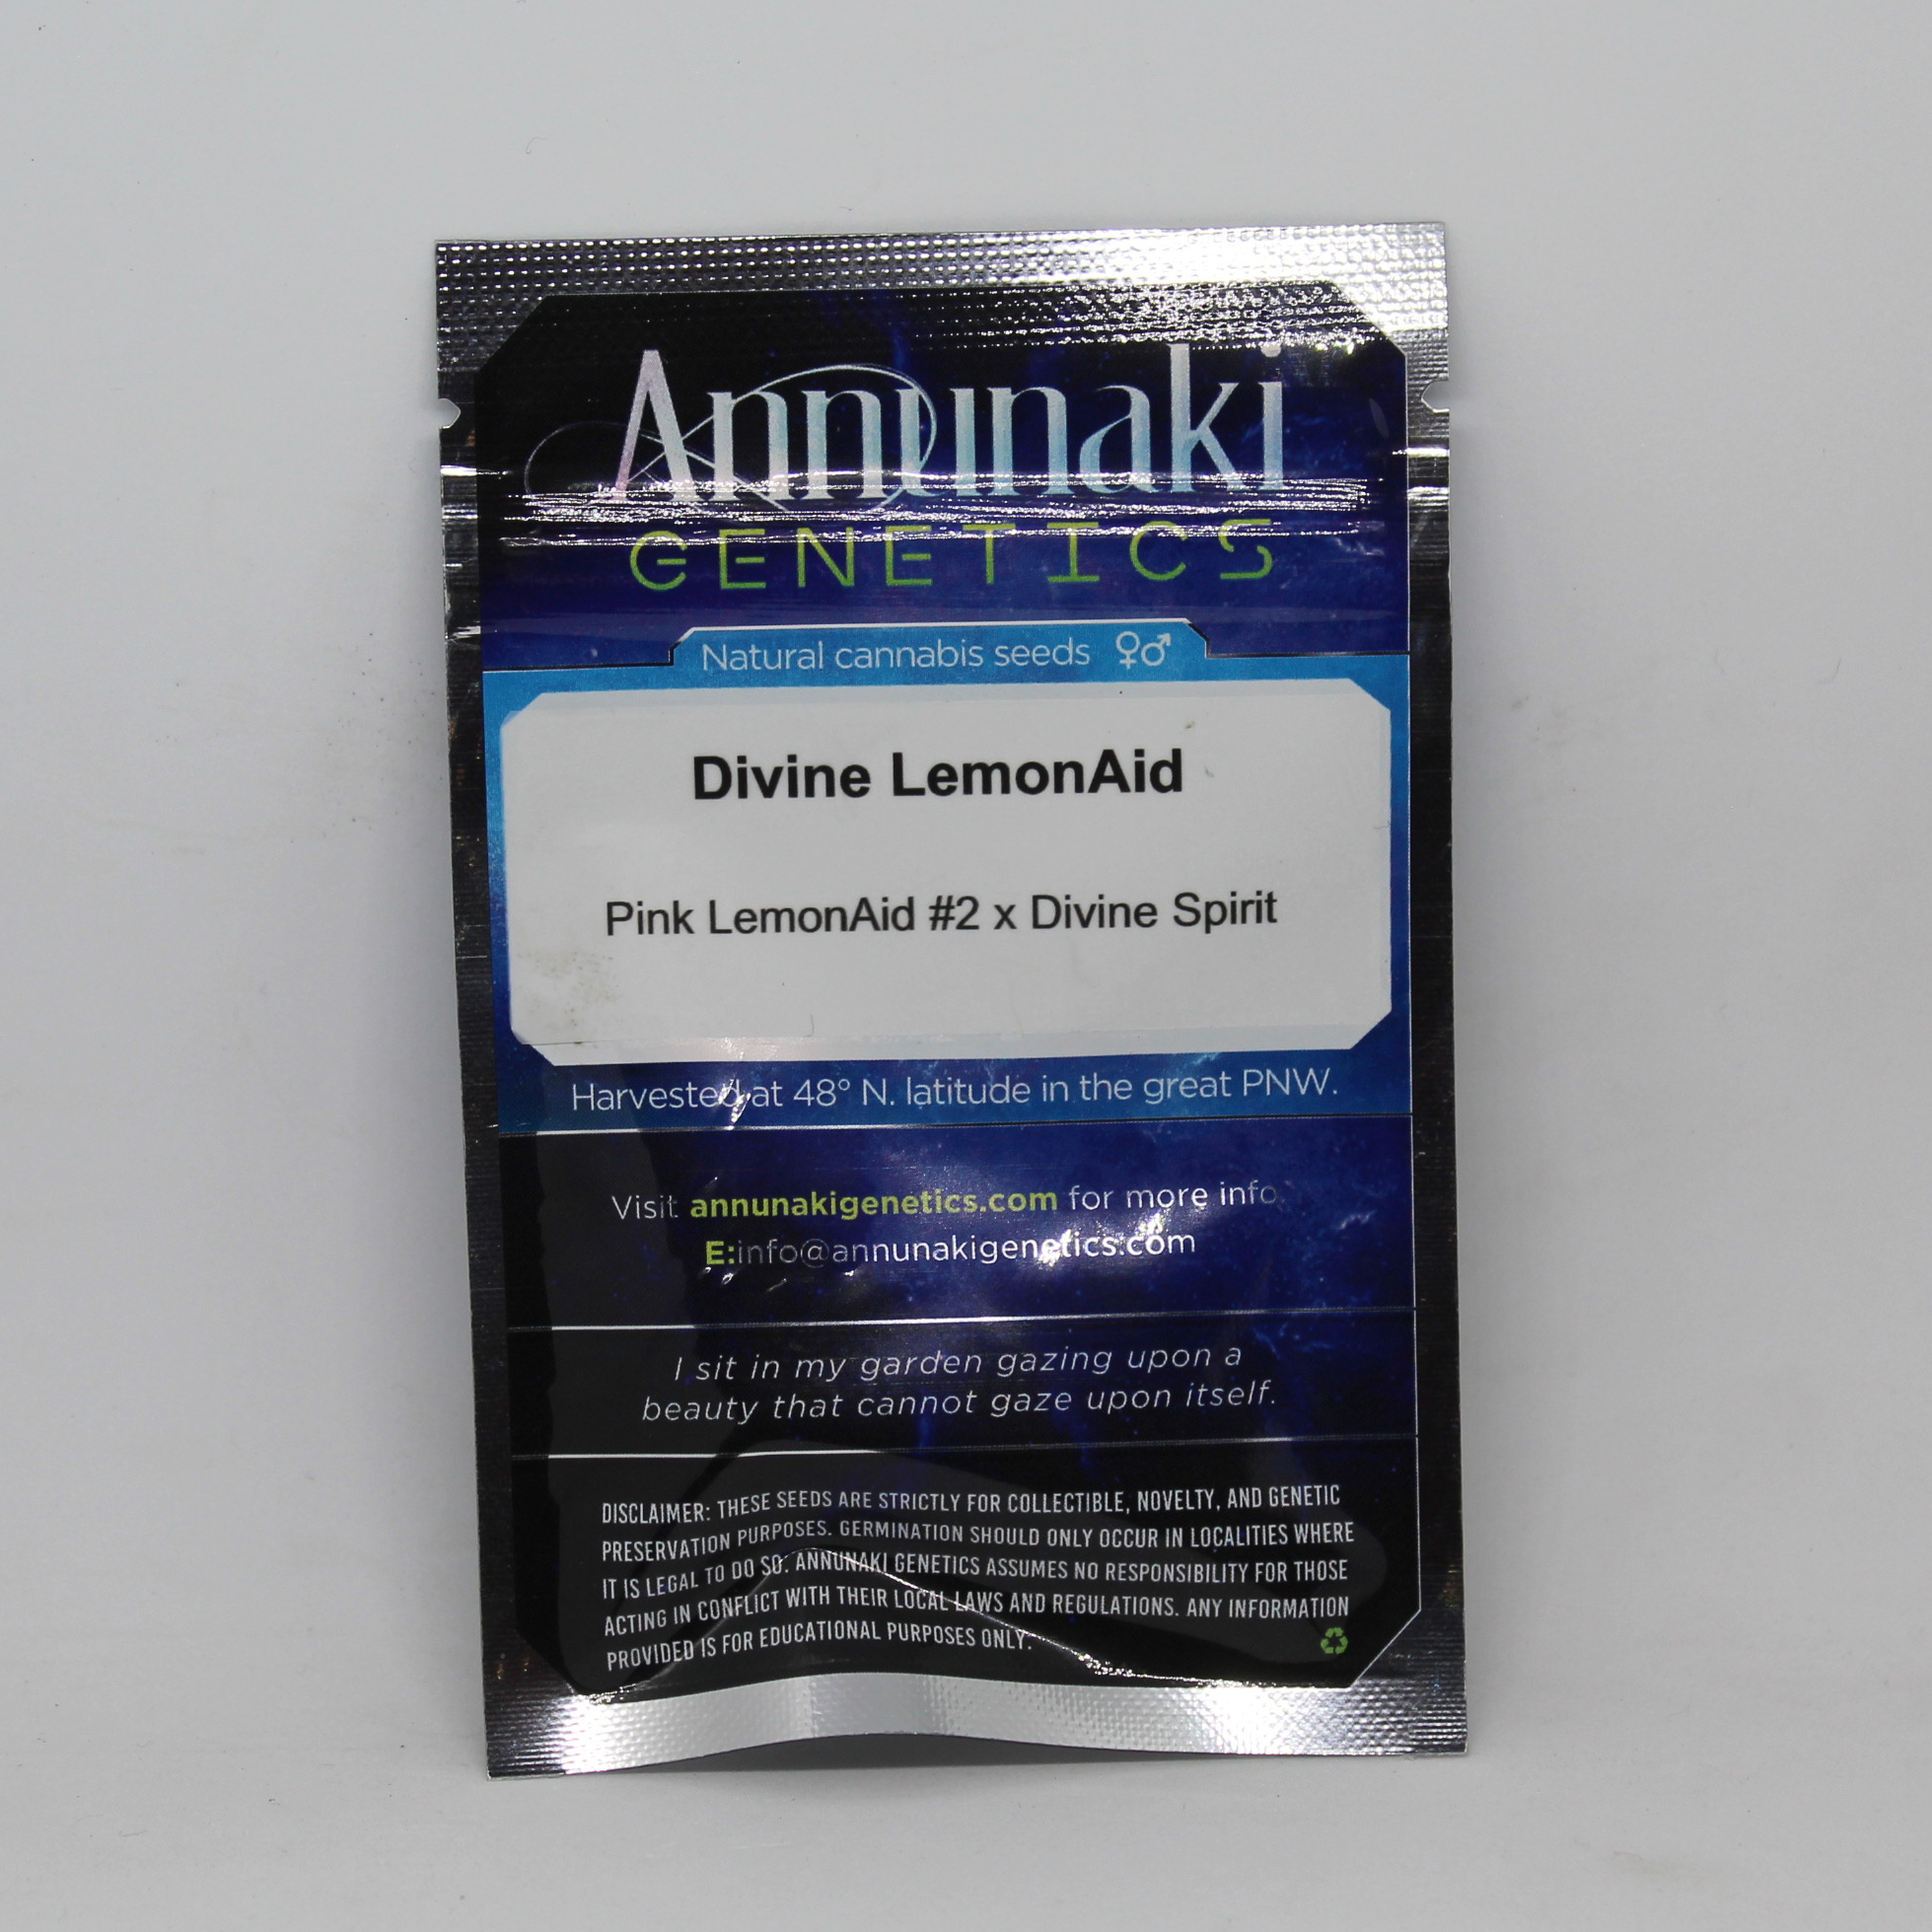 Divine LemonAid marijuana seed packs